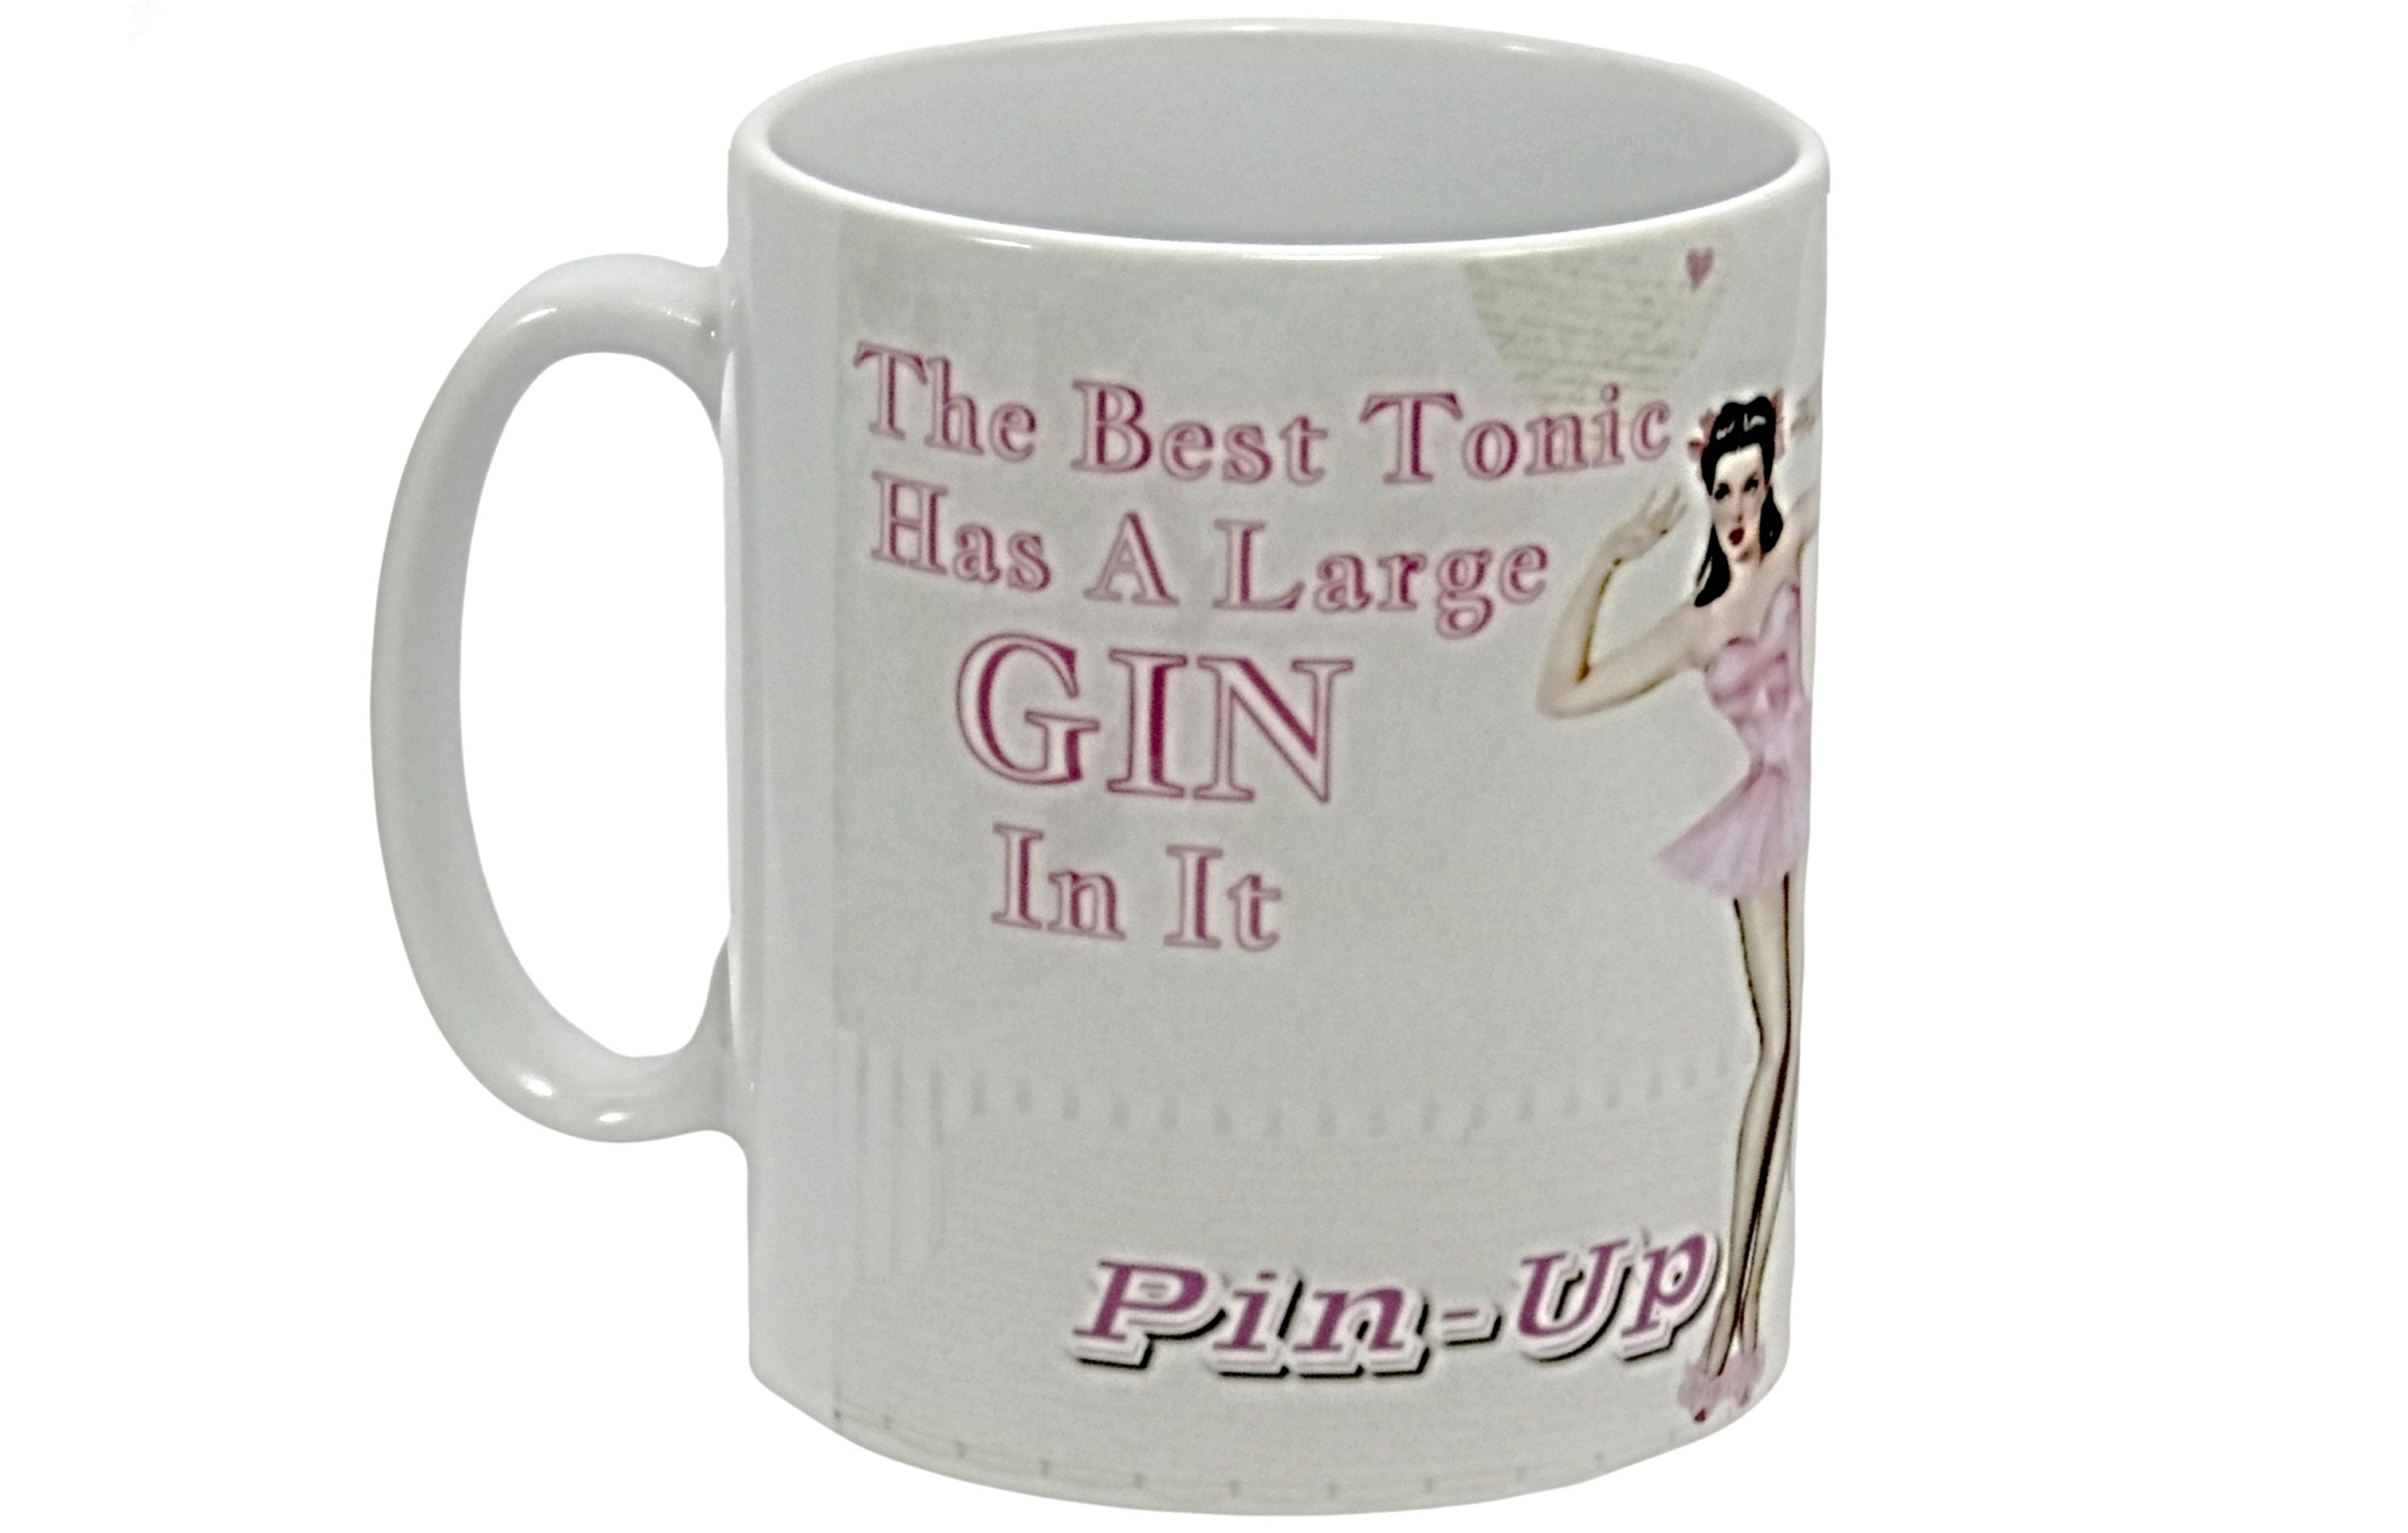 I'm a Gin and Tonic Lady Mug Gift for Her, Gin Gift Retro Gin Mug Gin Mug